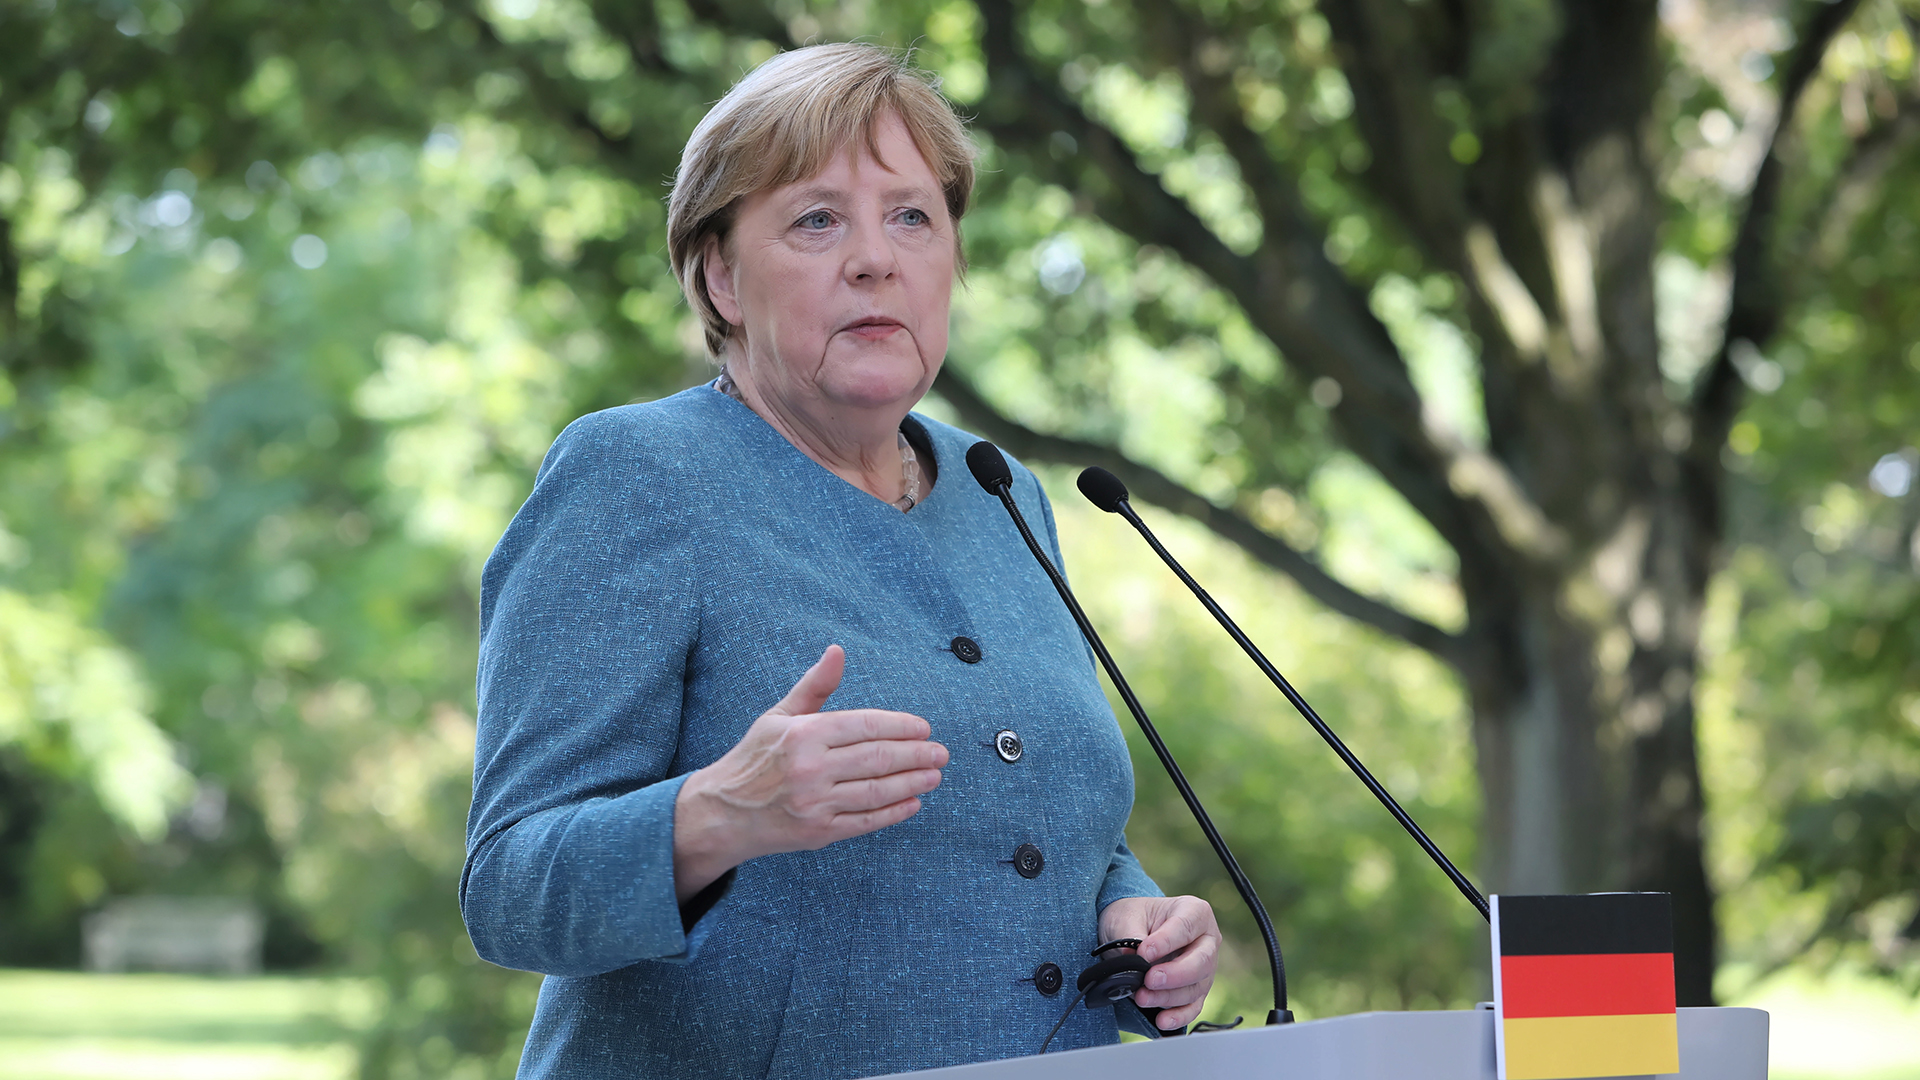 Alemania celebra elecciones generales para poner fin a “era Merkel”